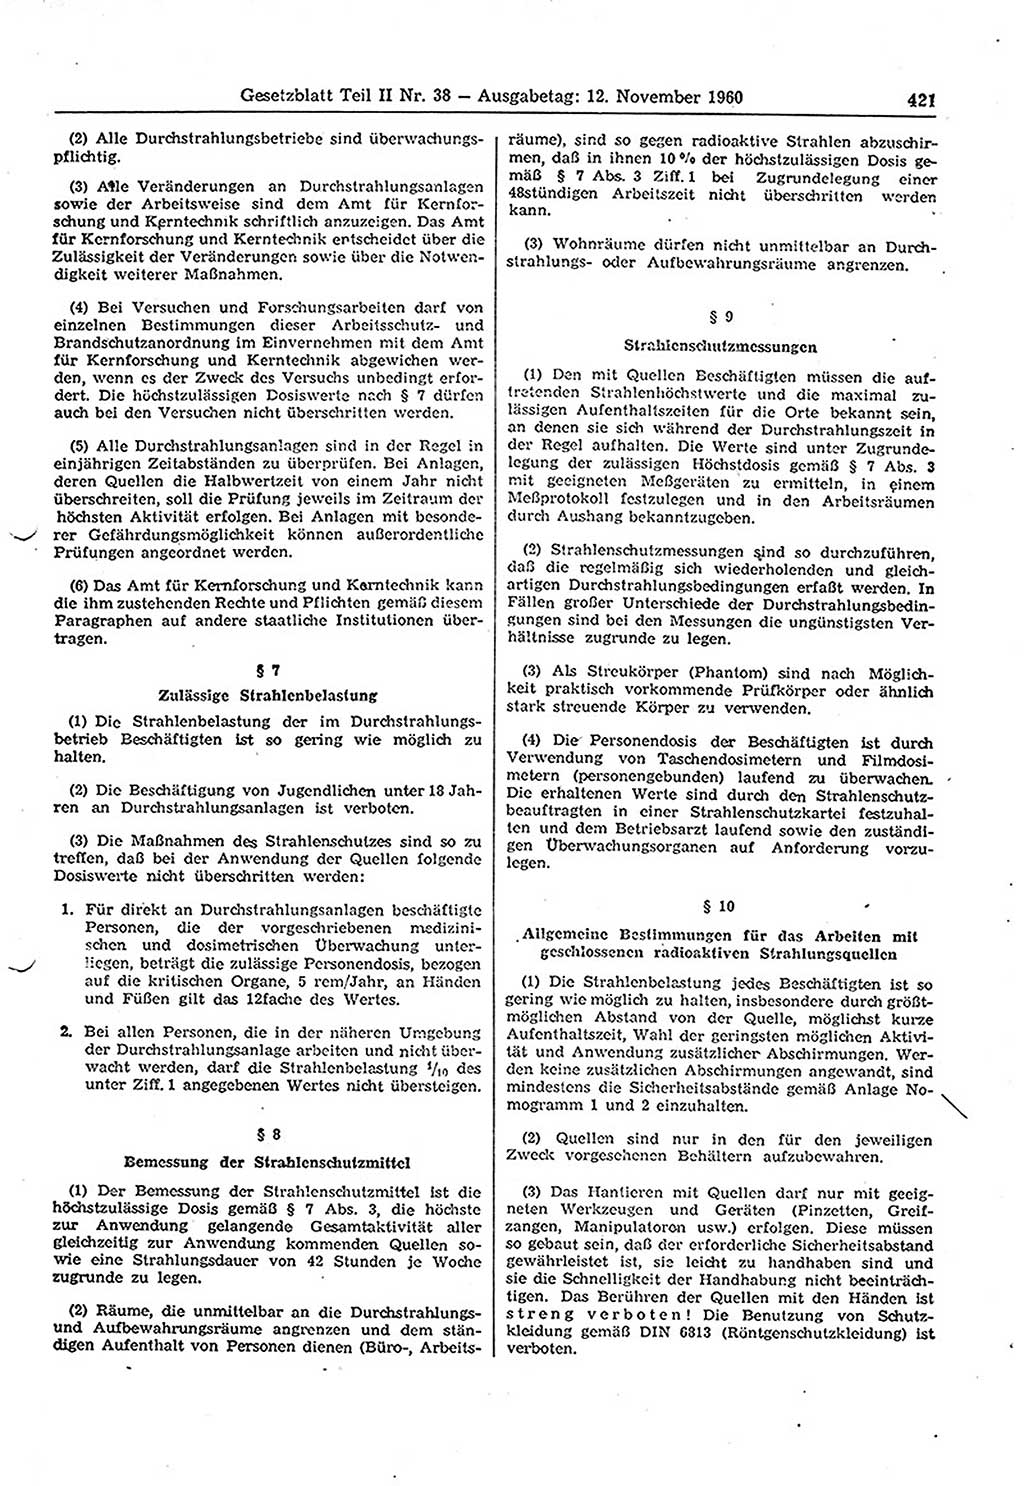 Gesetzblatt (GBl.) der Deutschen Demokratischen Republik (DDR) Teil ⅠⅠ 1960, Seite 421 (GBl. DDR ⅠⅠ 1960, S. 421)